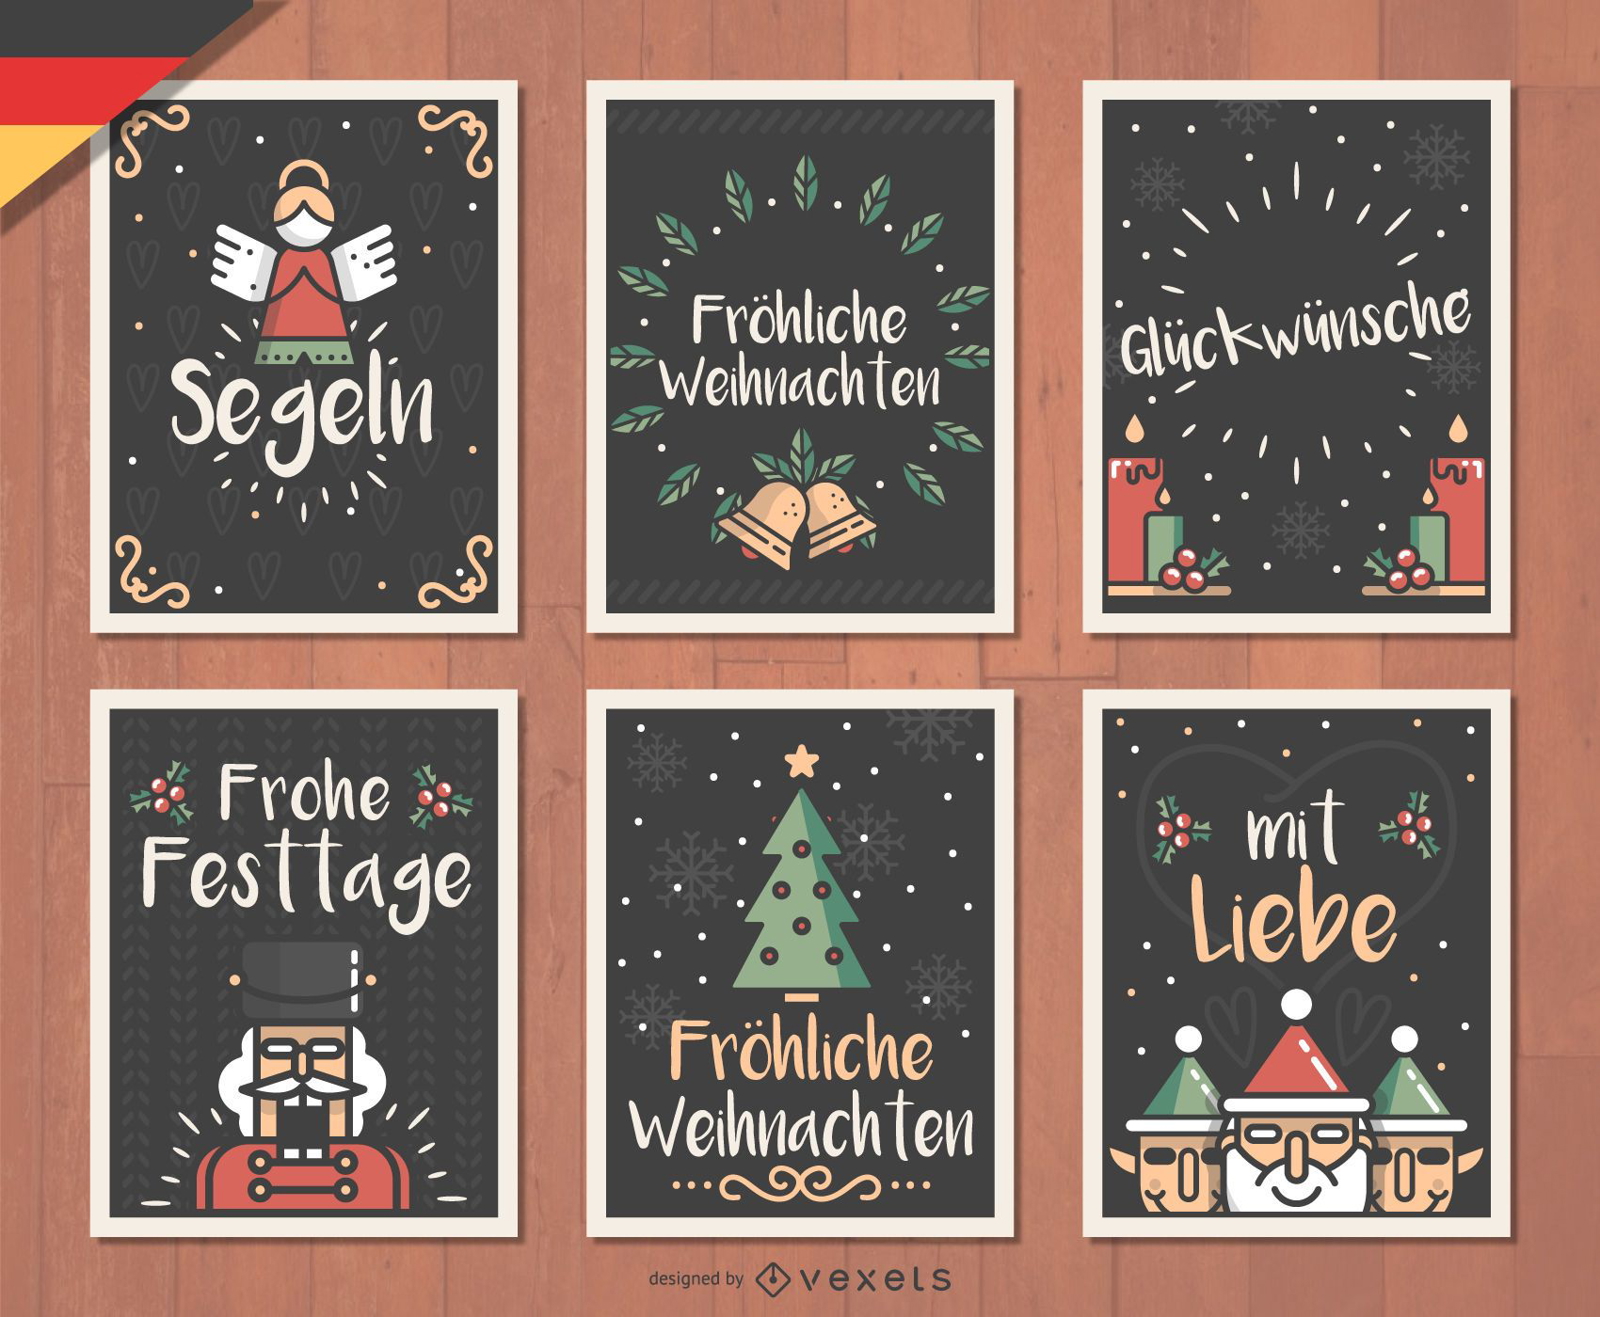 German Fr?hliche Weihnachten Christmas card set